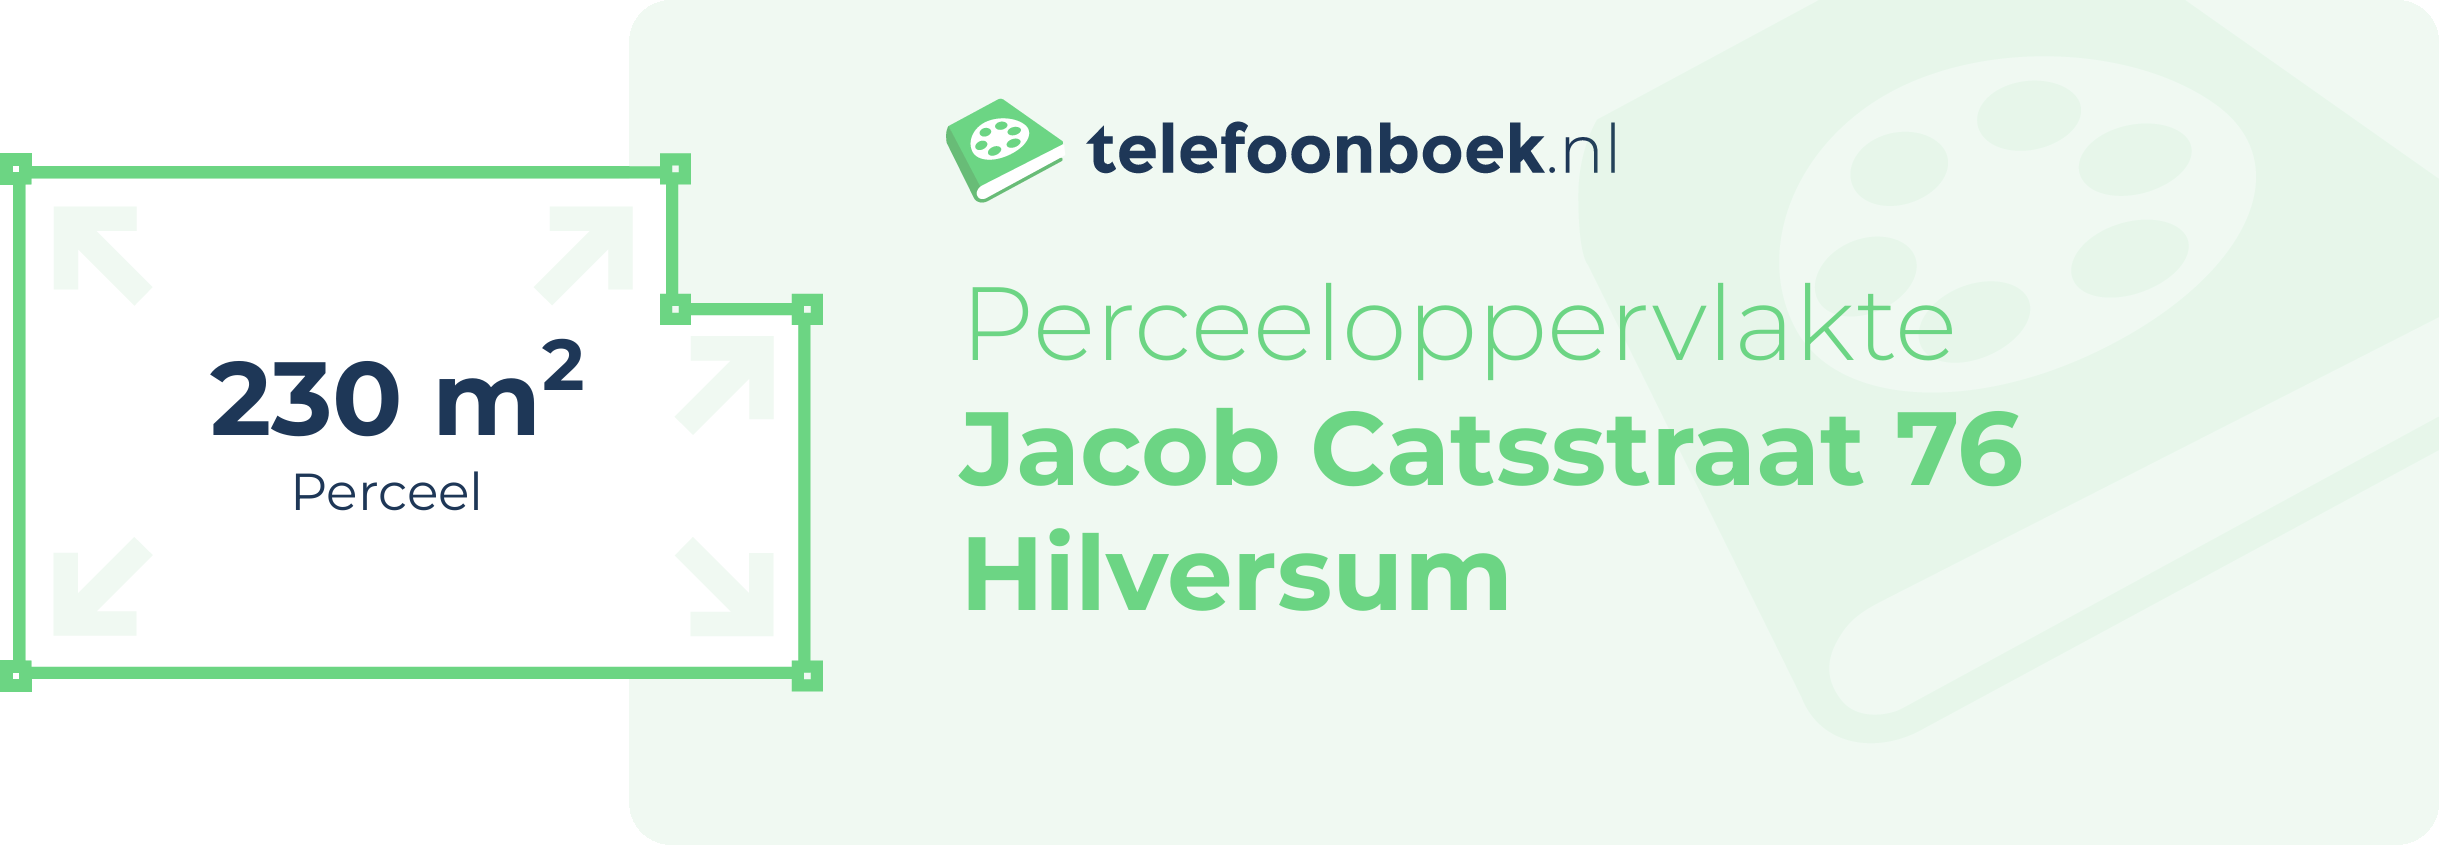 Perceeloppervlakte Jacob Catsstraat 76 Hilversum